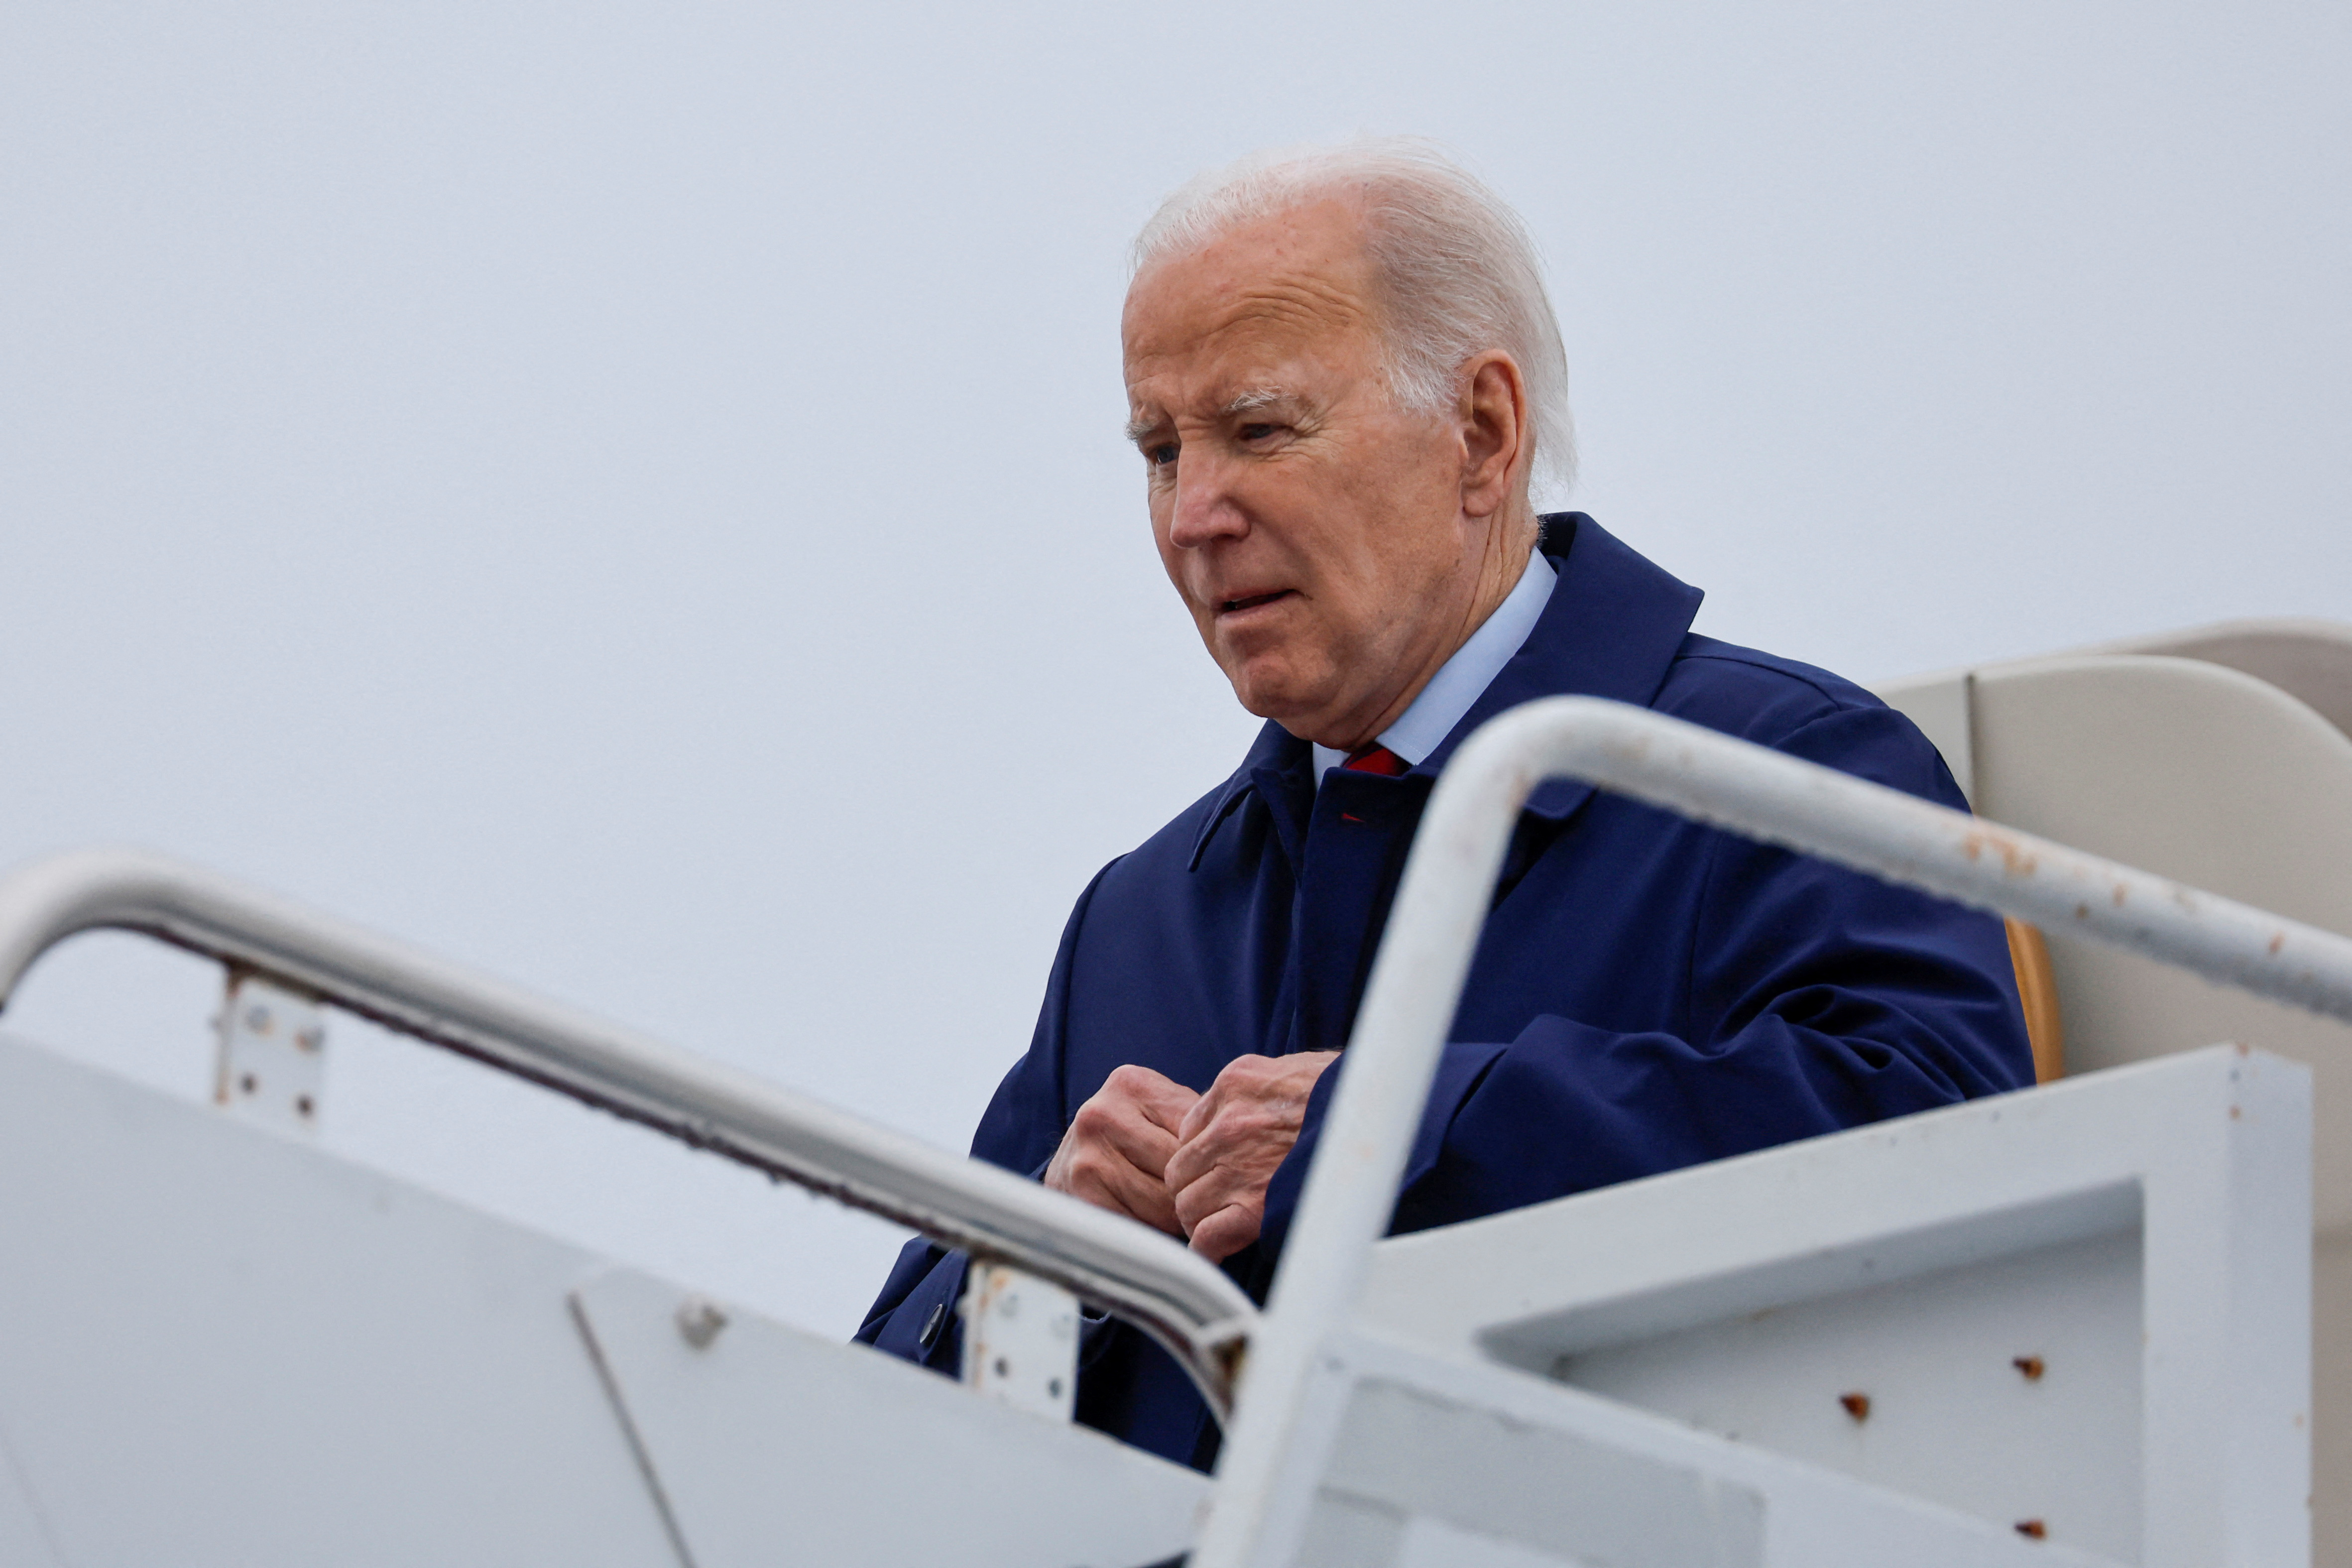 U.S. President Biden arrives aboard Air Force One in New Castle, Delaware